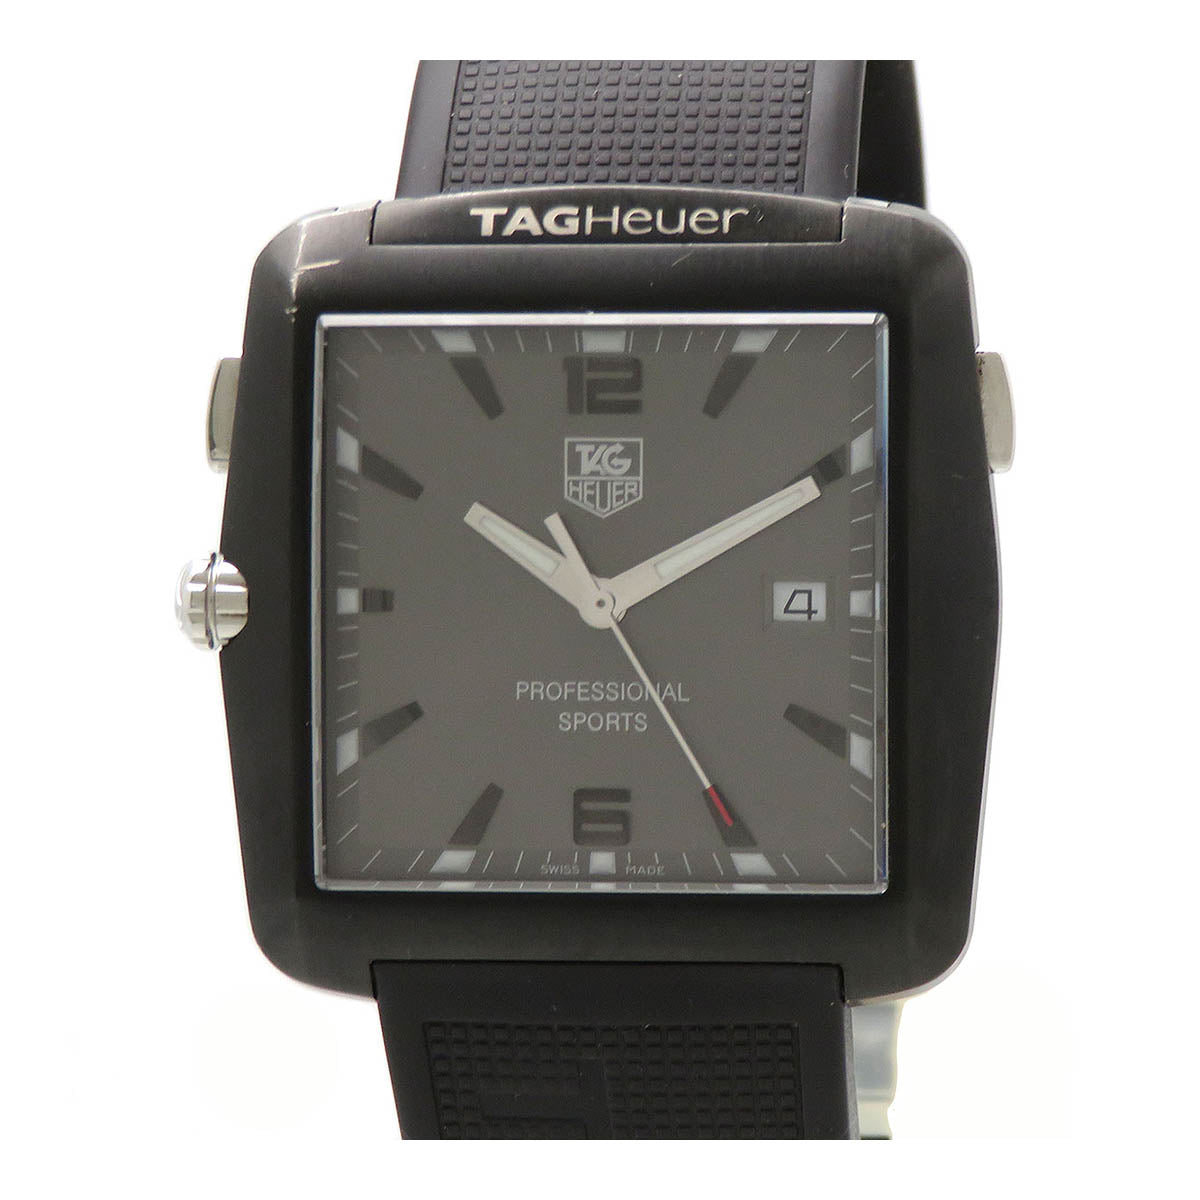 Automatic Professional Sports Golf Wrist Watch WAE1113.FT6004